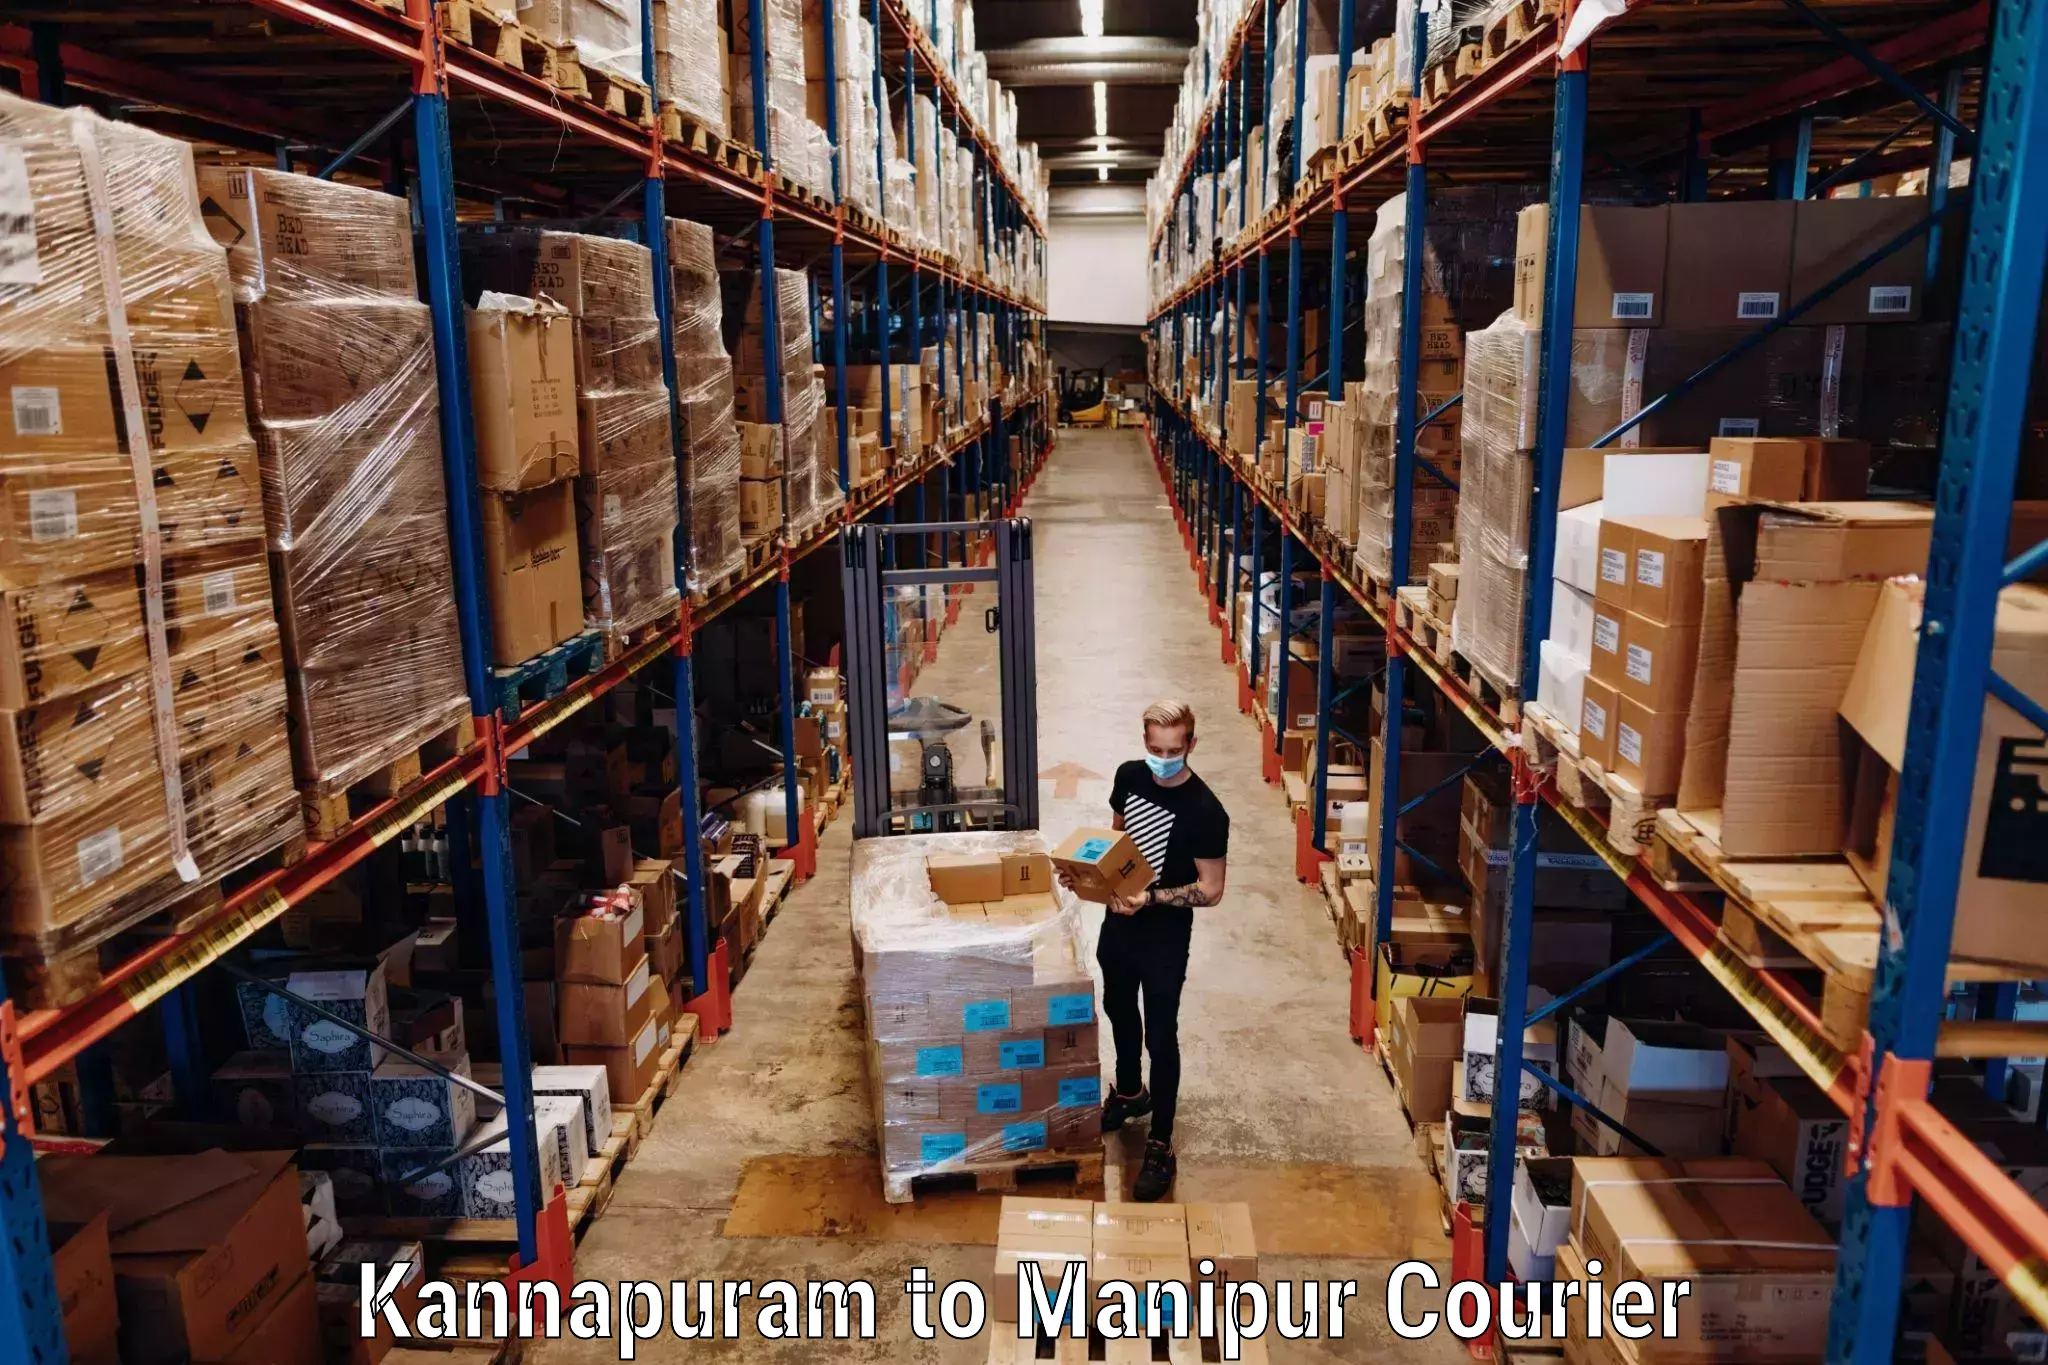 Luggage transport service Kannapuram to IIIT Senapati